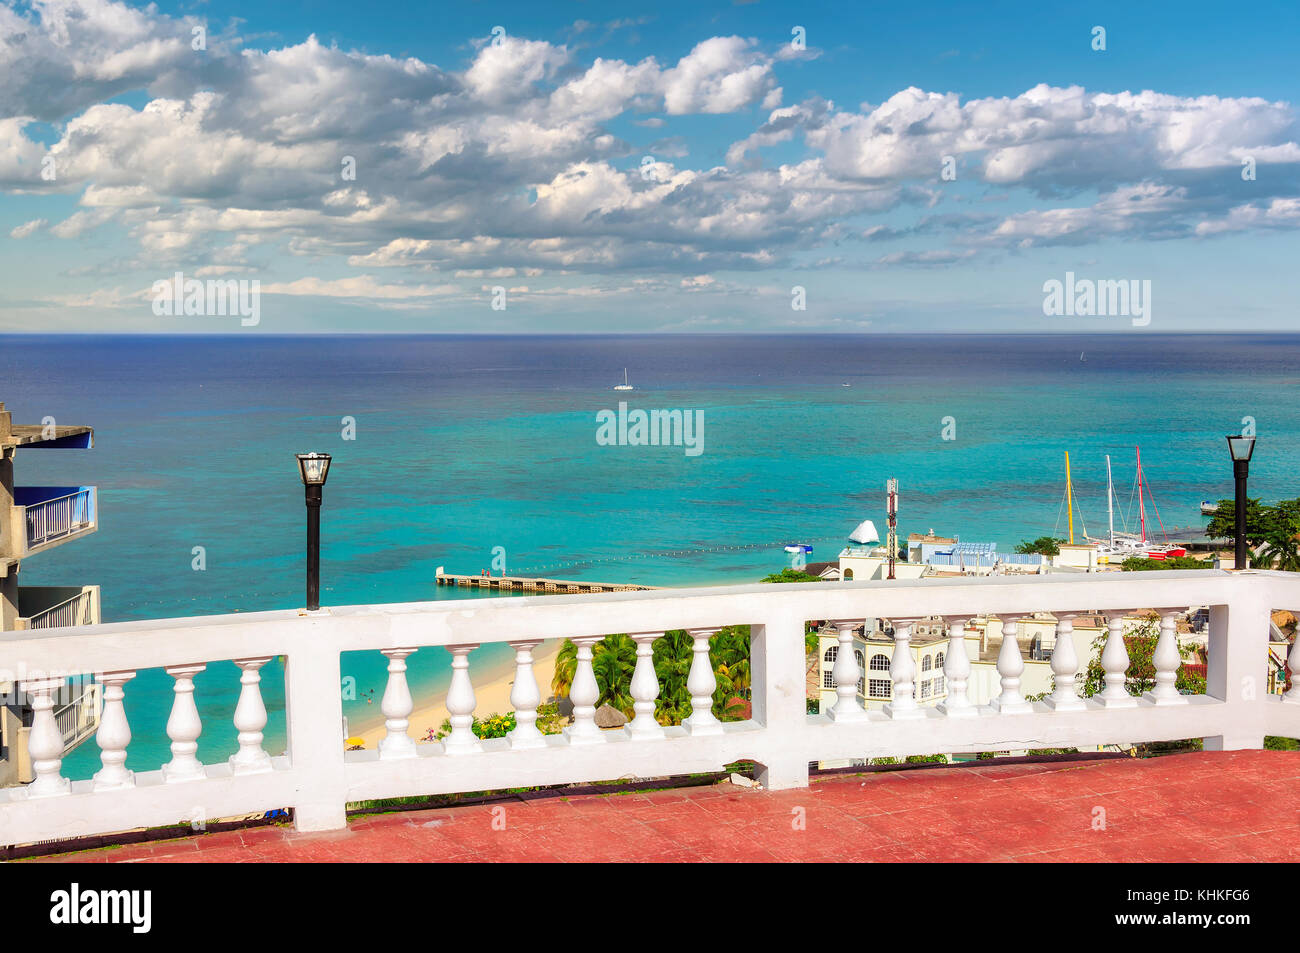 Belle vue sur mer des Caraïbes dans la région de Montego Bay, Jamaïque Banque D'Images